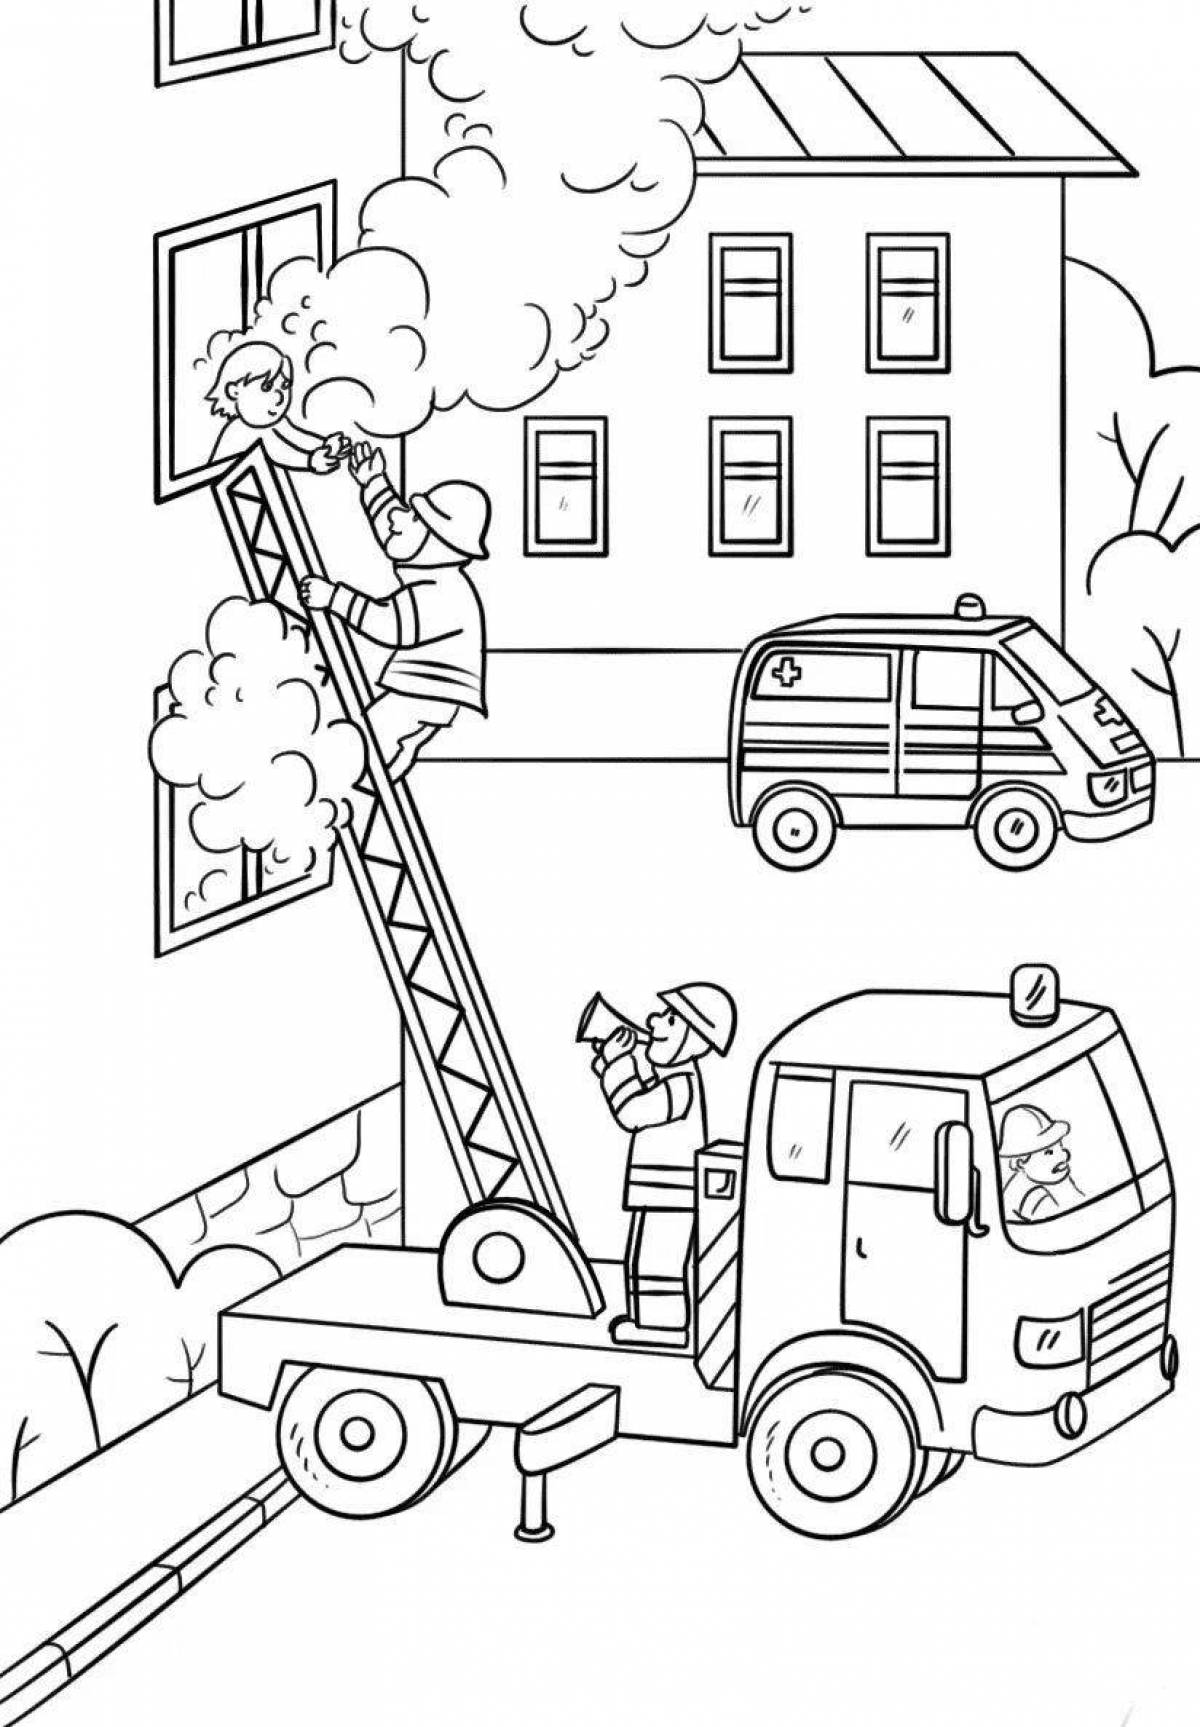 Забавная раскраска пожарной безопасности для детского сада